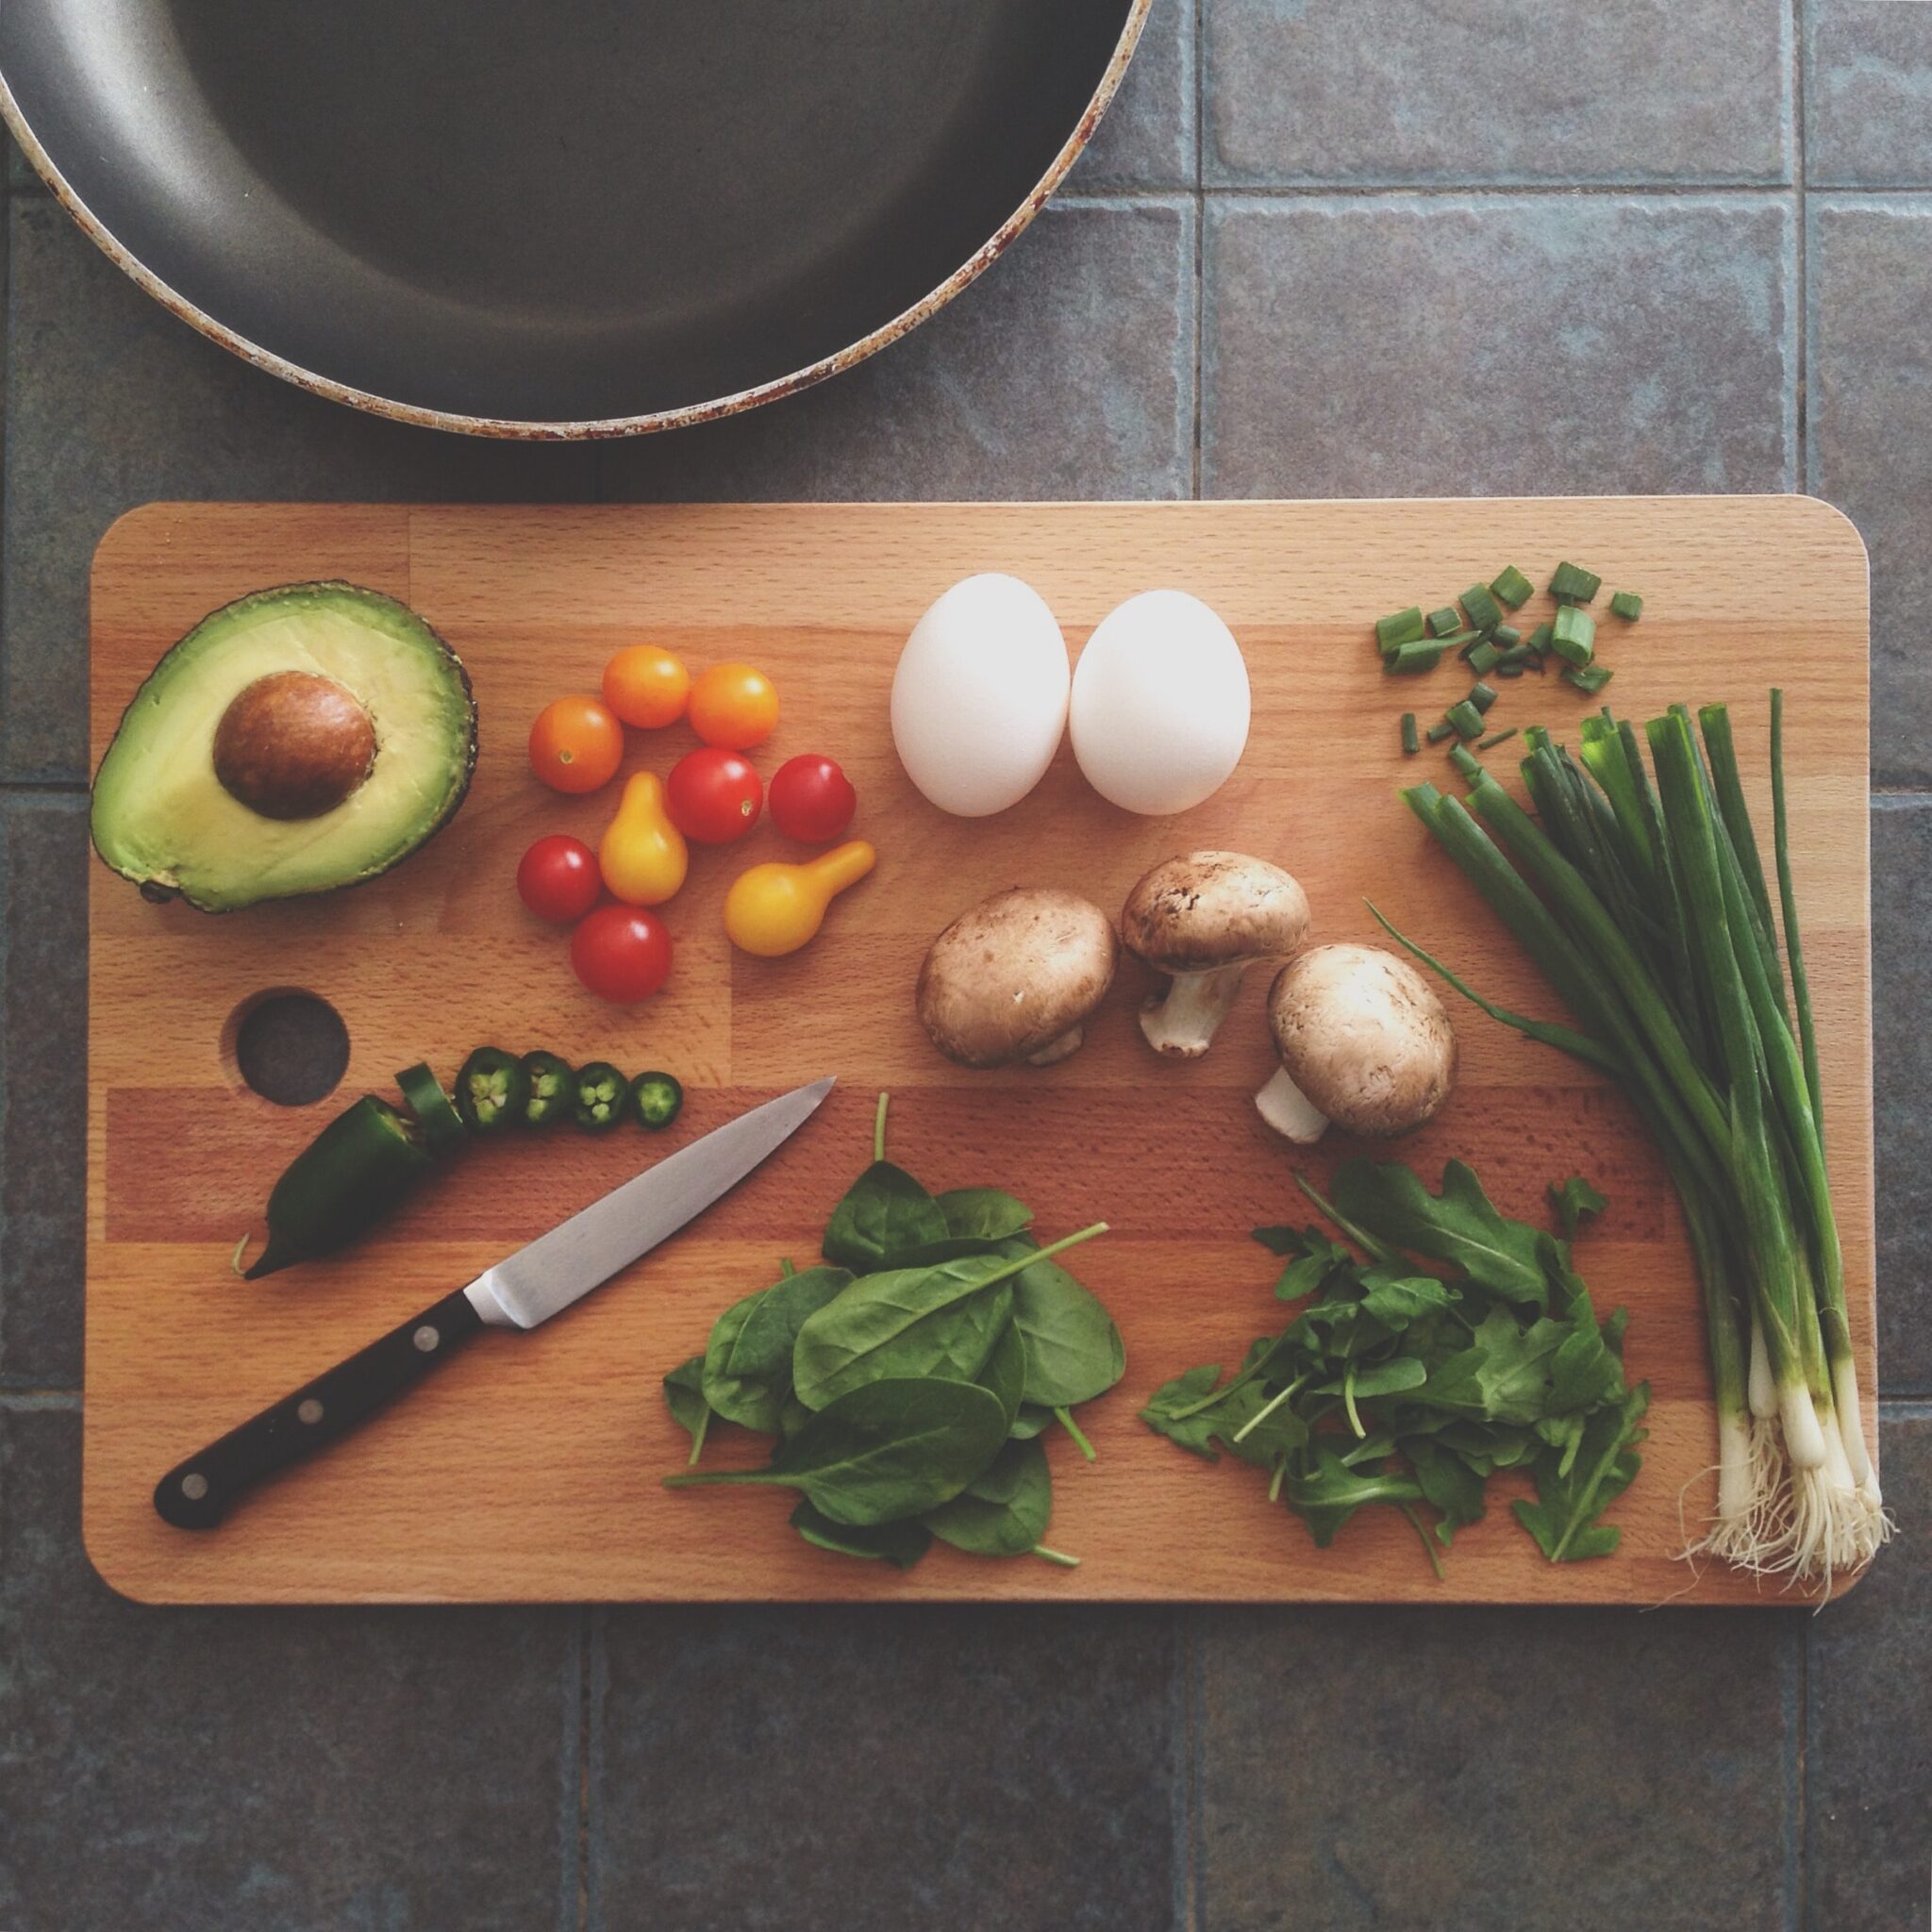 Auf dem Bild ist ein Holzschneidebrett, auf grauem Hintegrund zu sehen. Darauf liegt Gemüse und ein Messer.